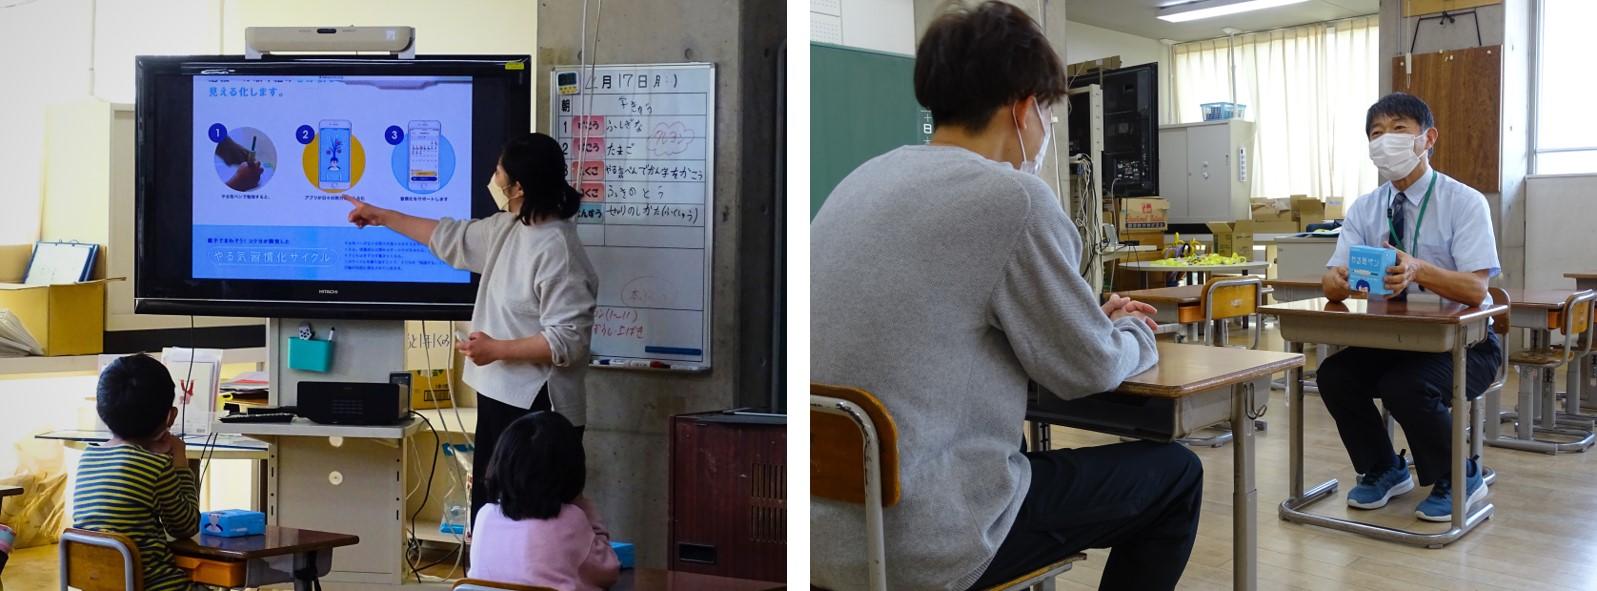 （左）教室で児童にやる気ペンを説明している様子 （右）保護者にやる気ペンを説明している様子